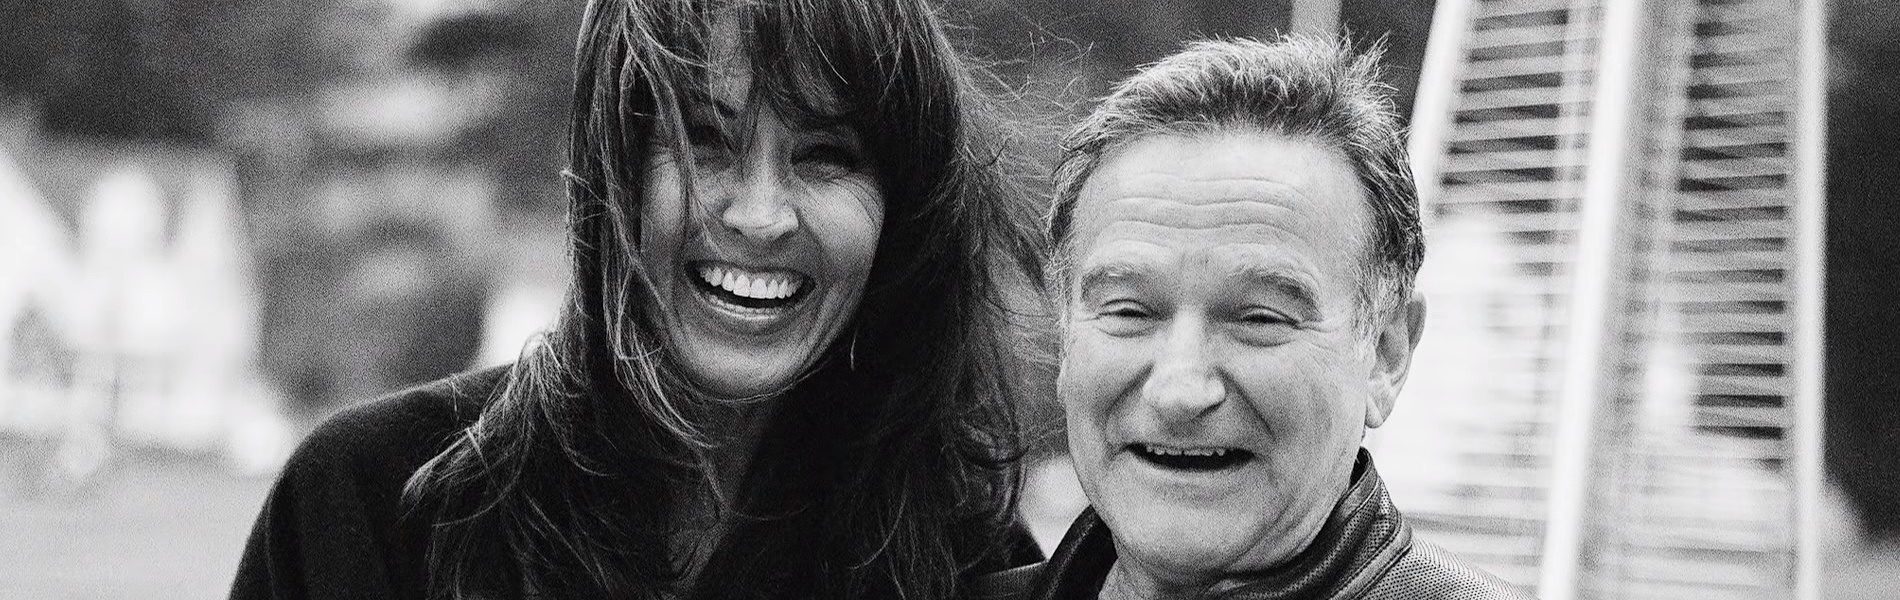 Dokumentumfilm készül egy csodálatos emberről, Robin Williams halála előtti időszakáról